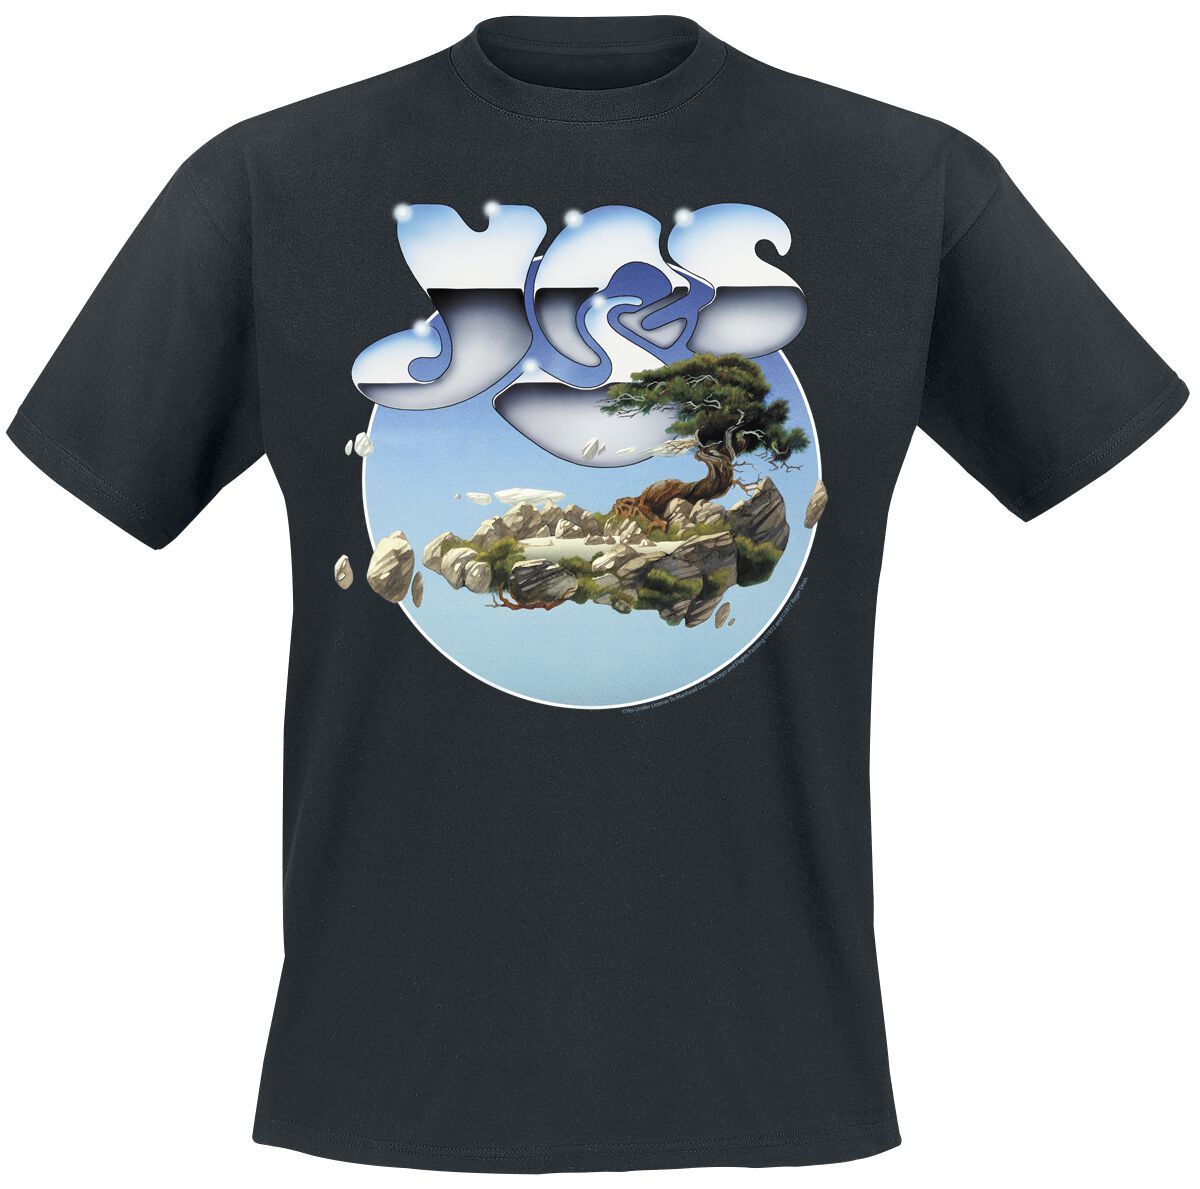 Image of Yes Chrome Island T-Shirt schwarz